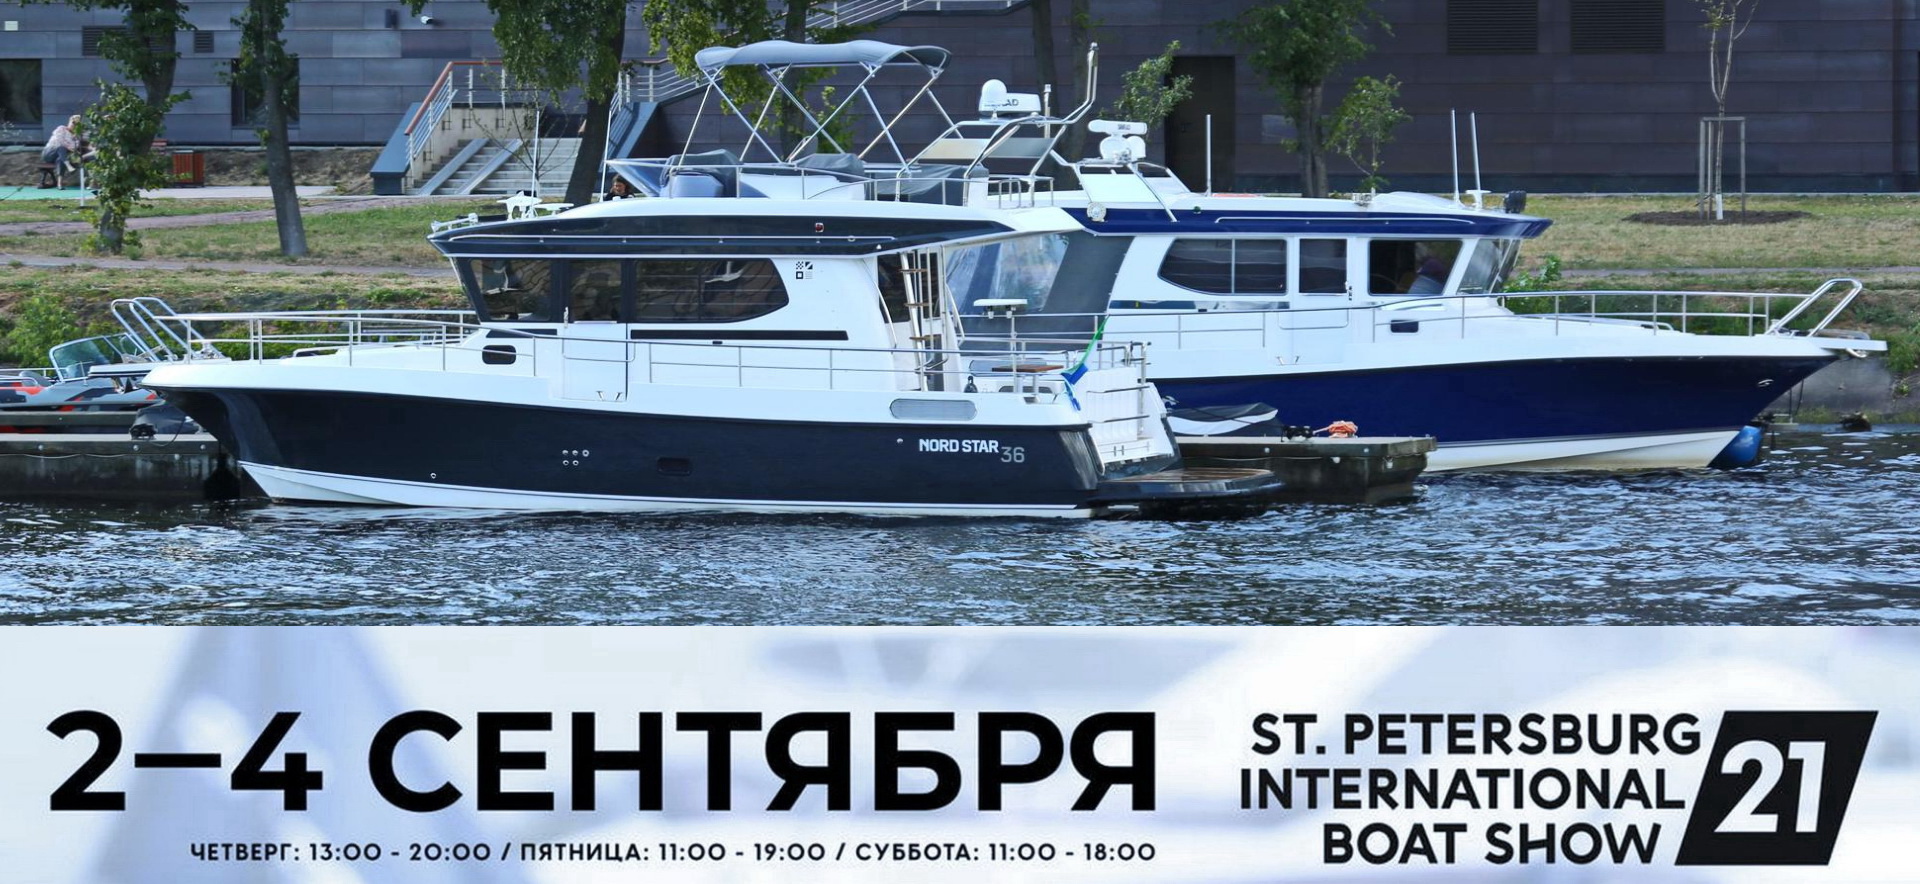 Приглашаем на выставку катеров и яхт SPIBS 2021 в Санкт-Петербурге!